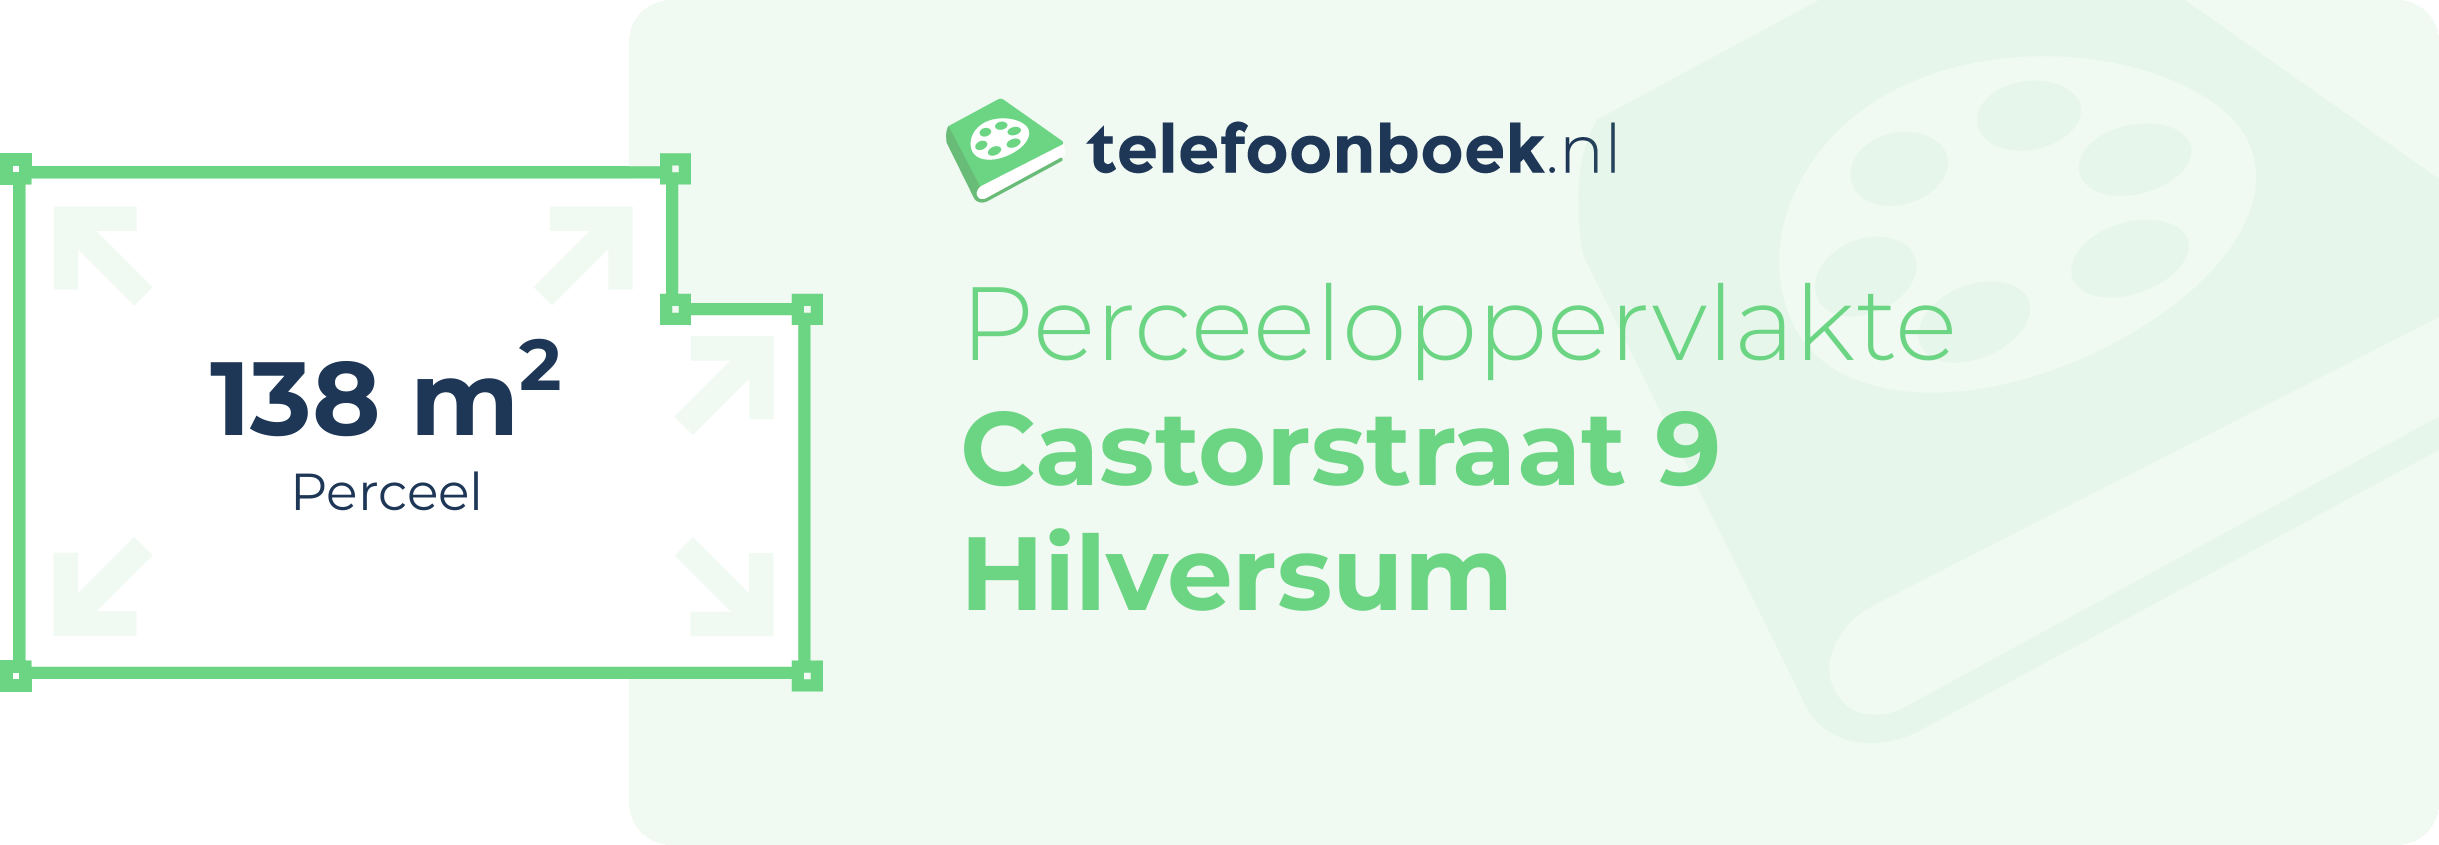 Perceeloppervlakte Castorstraat 9 Hilversum